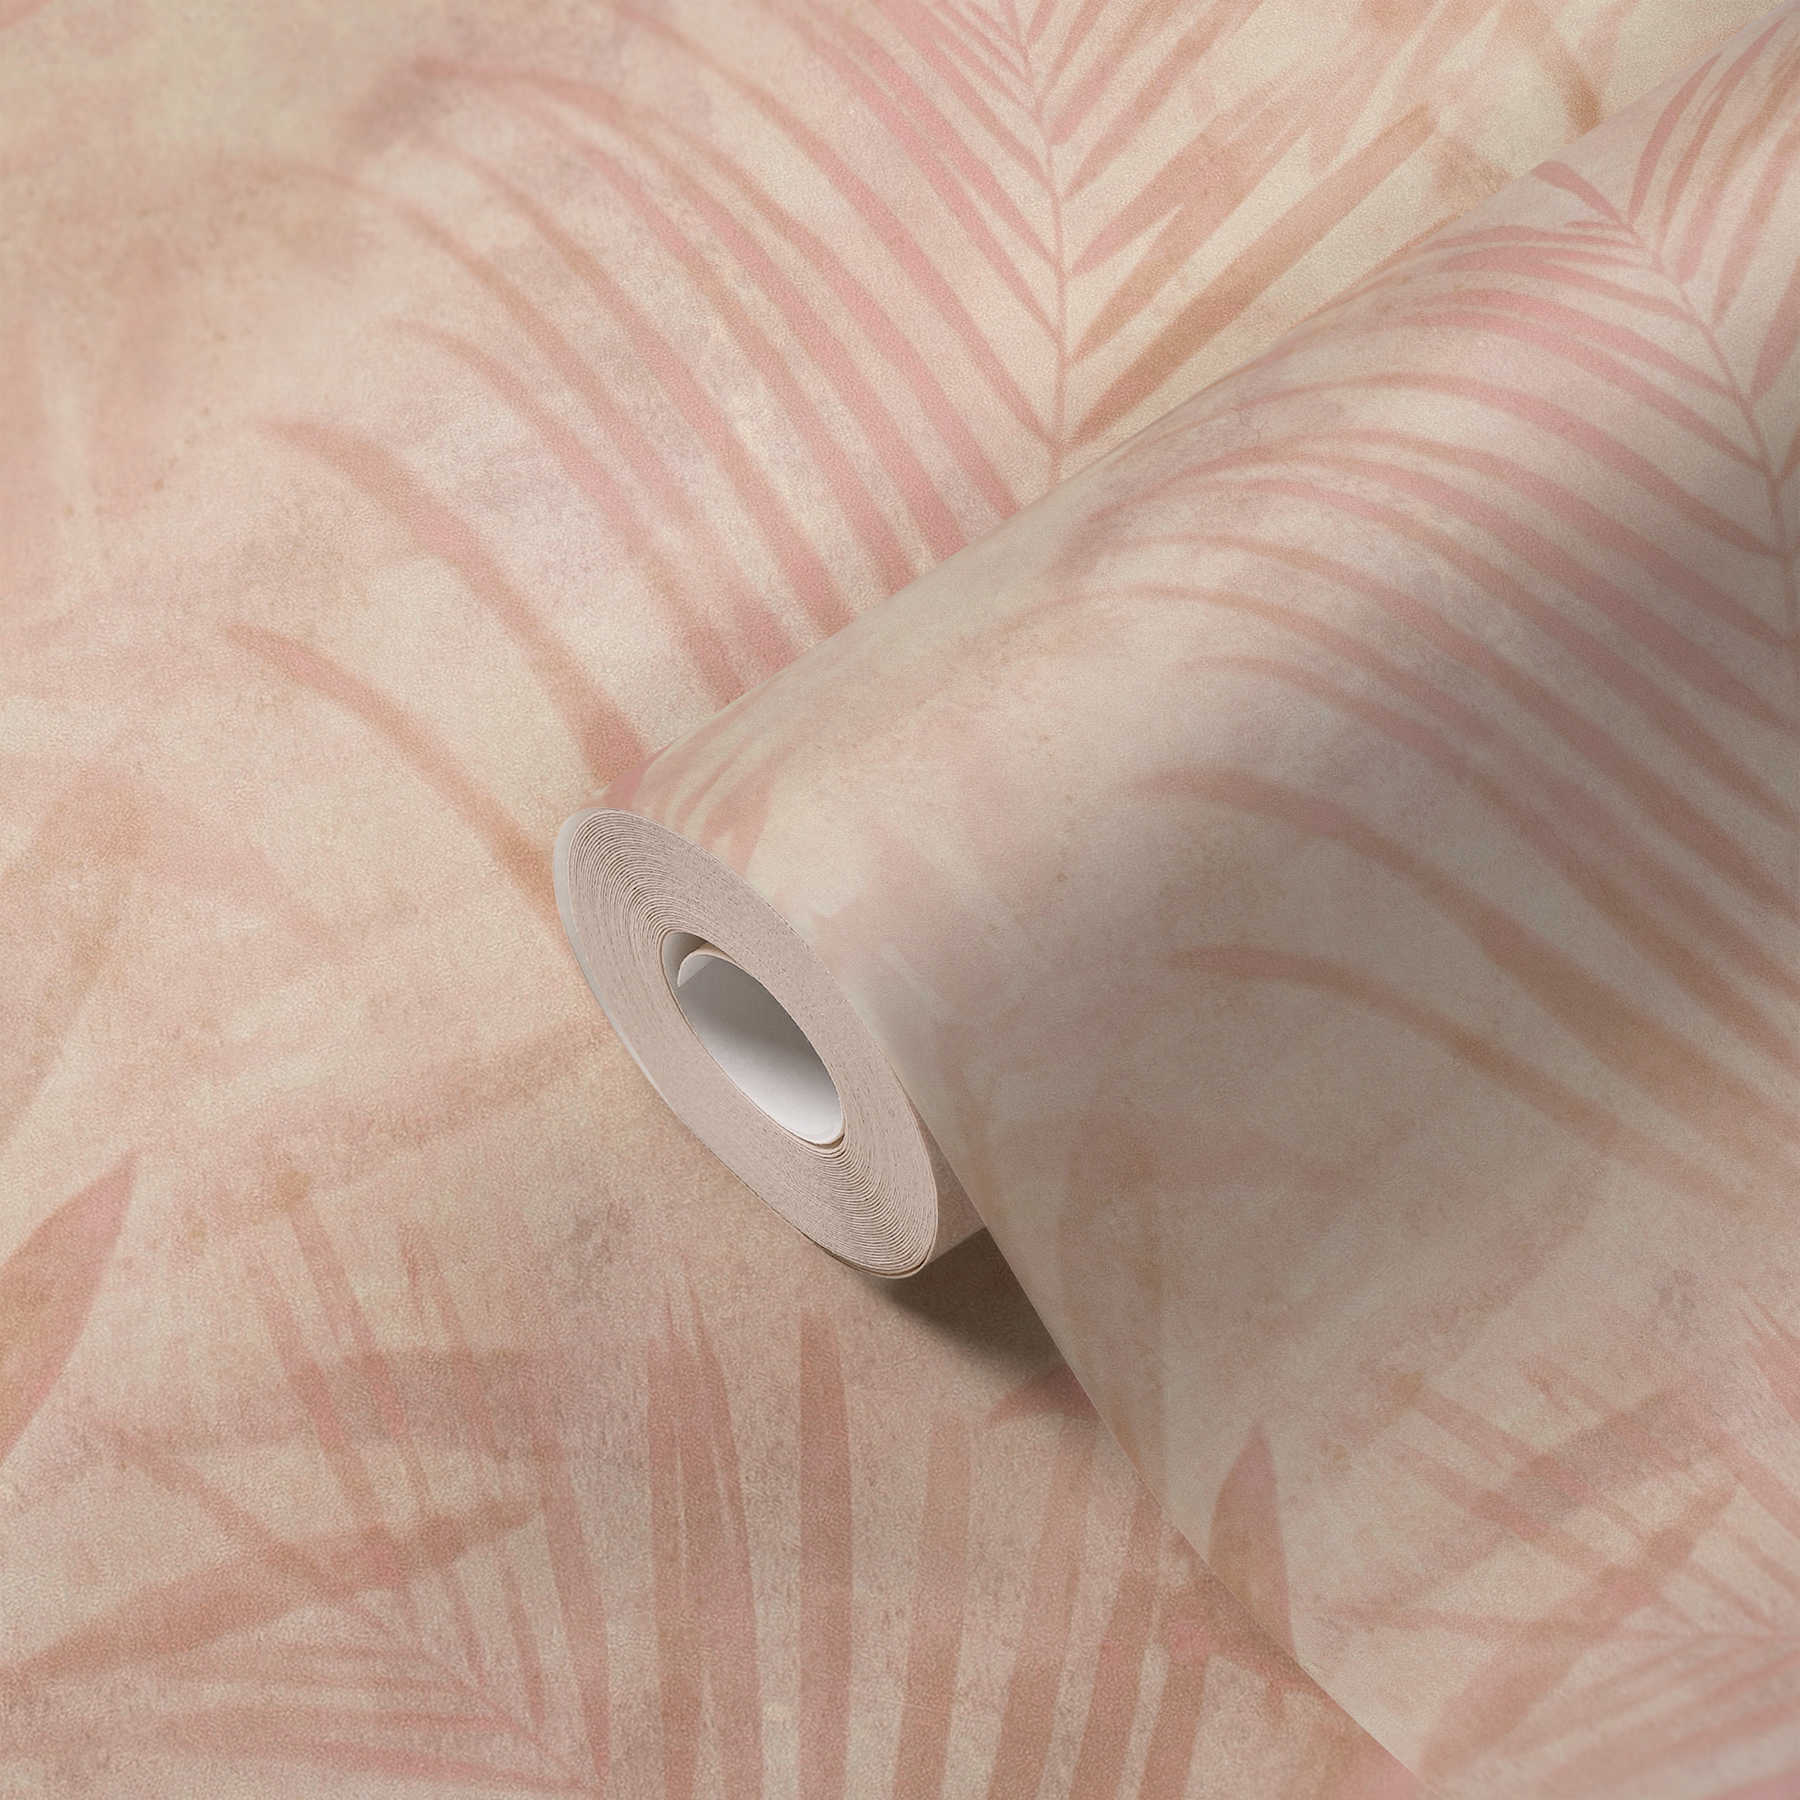             Wallpaper palm tree pattern in linen look - pink, beige, cream
        